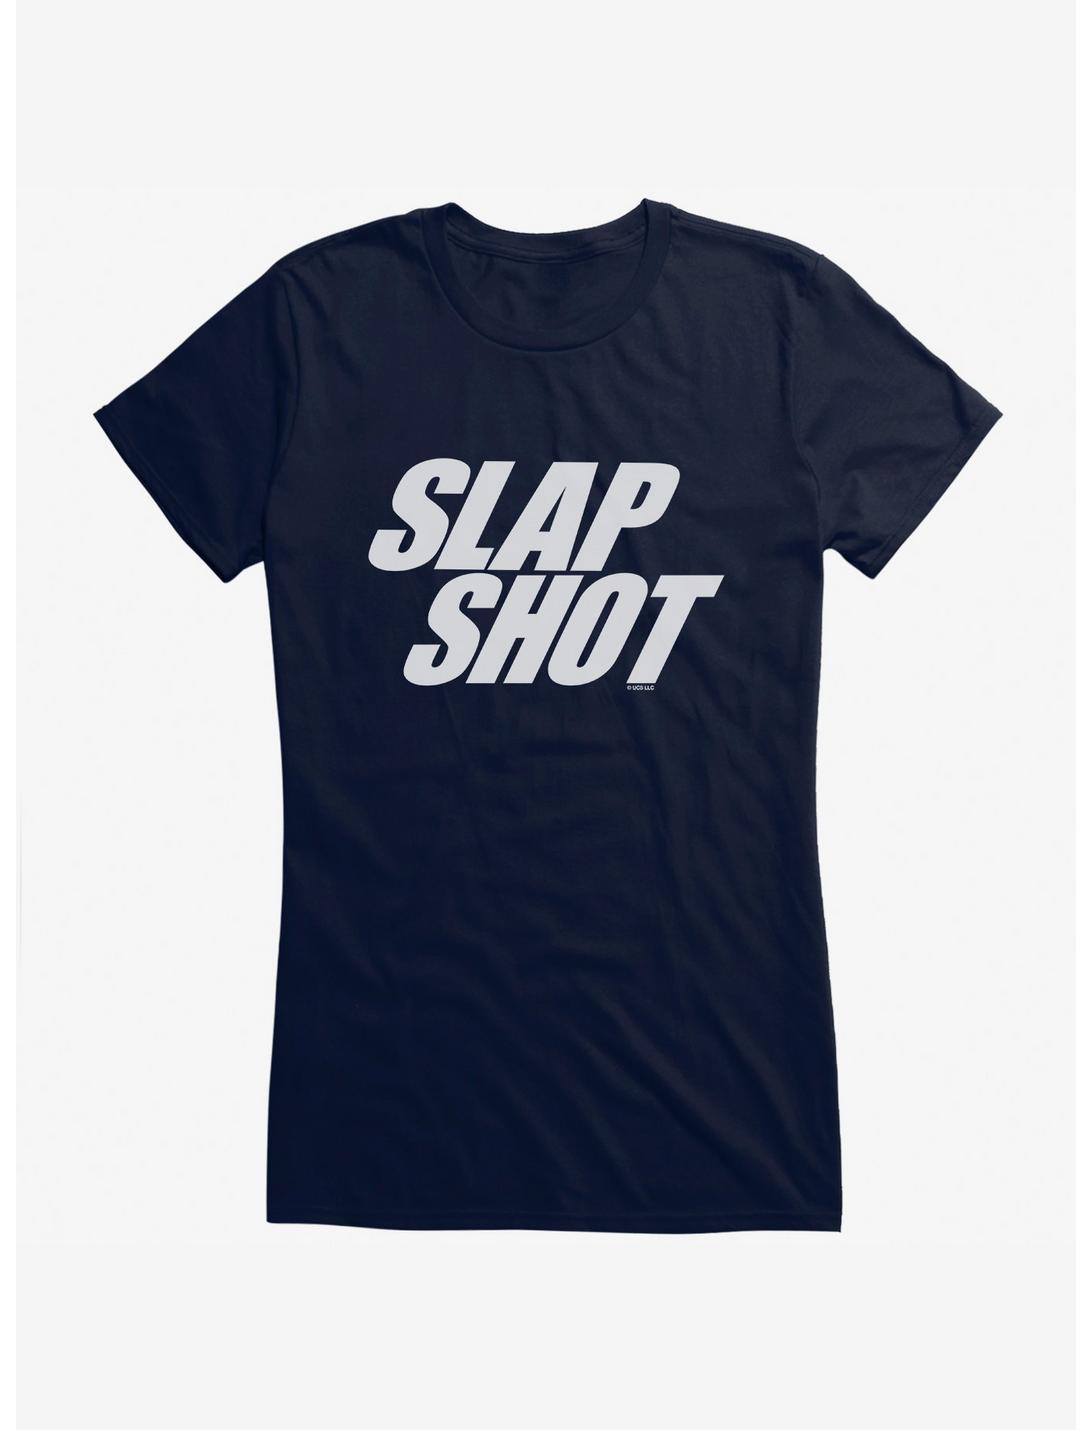 Slapshot Logo Girls T-Shirt, NAVY, hi-res